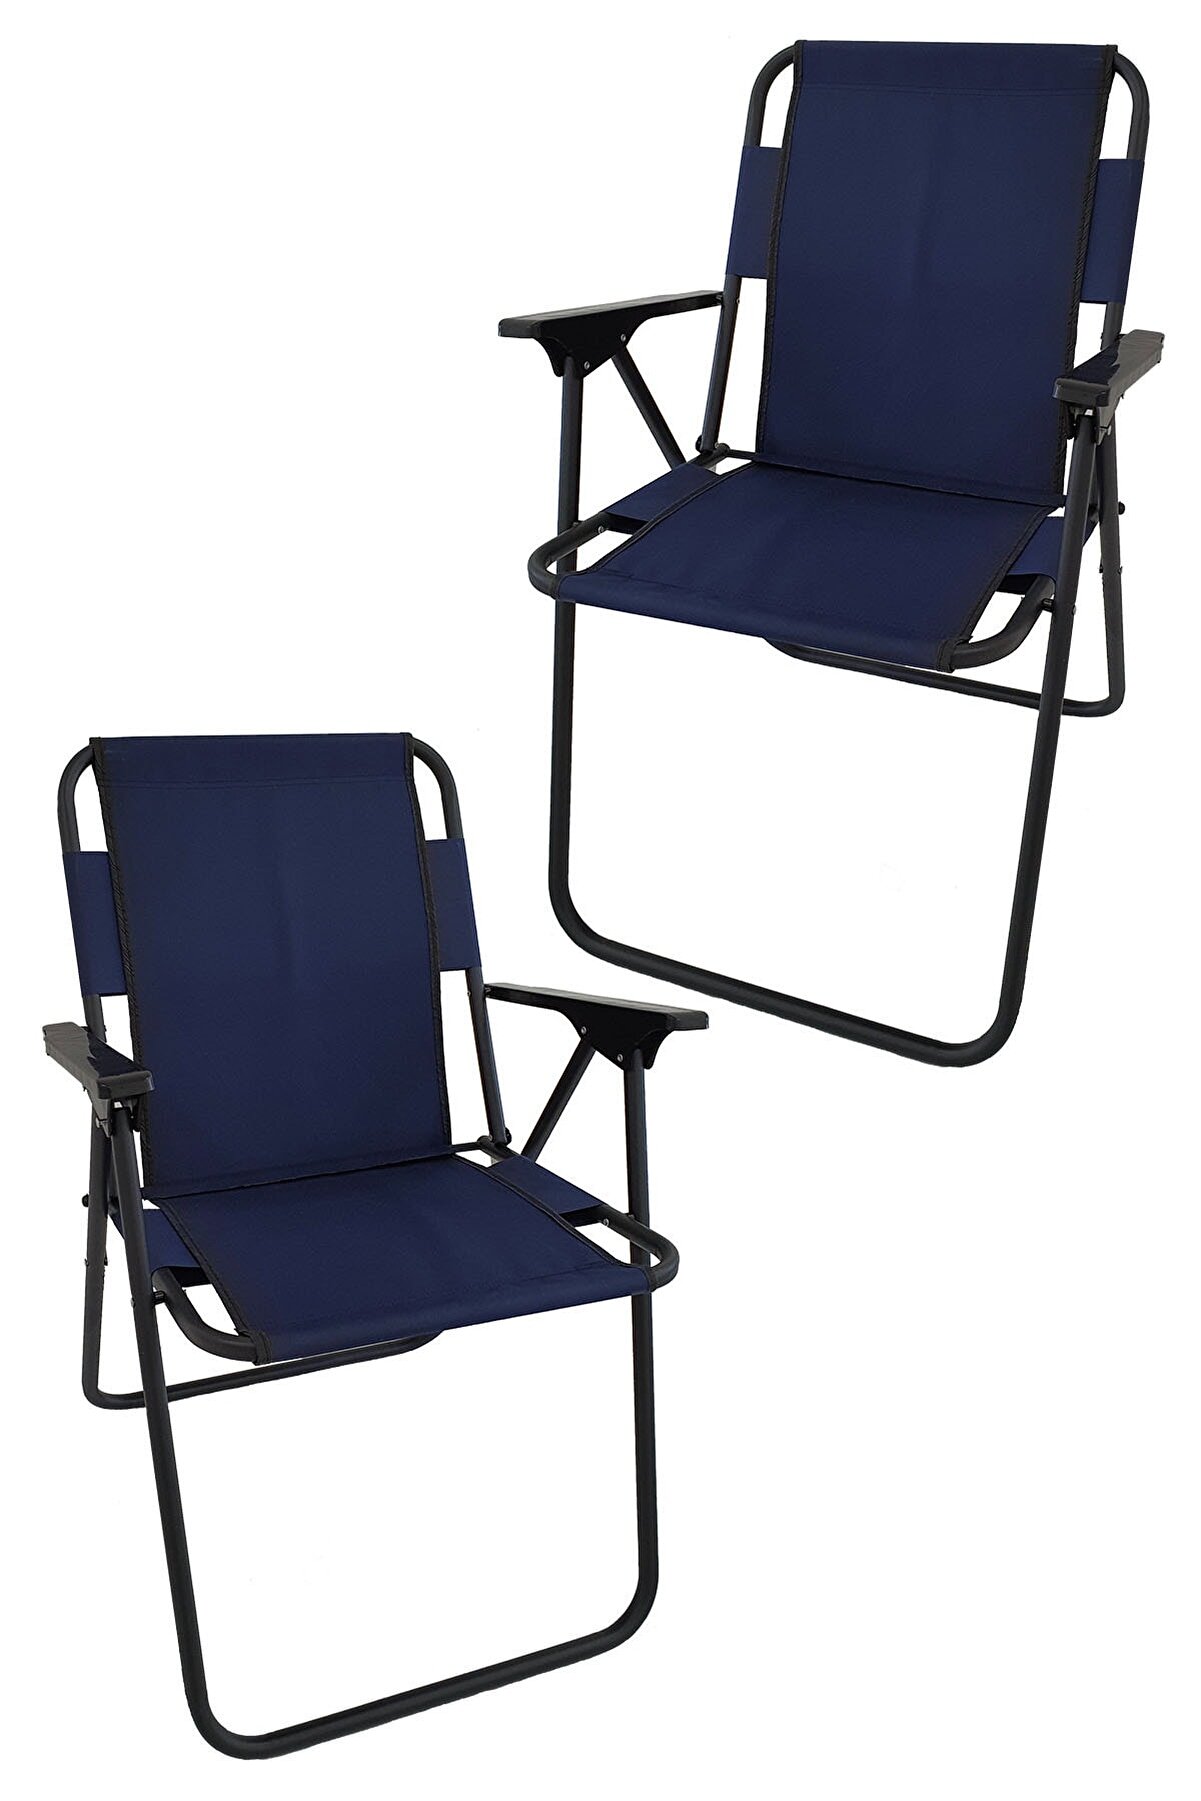 Bofigo 2 Adet Kamp Sandalyesi Katlanır Sandalye Piknik Sandalyesi Plaj Sandalyesi Lacivert